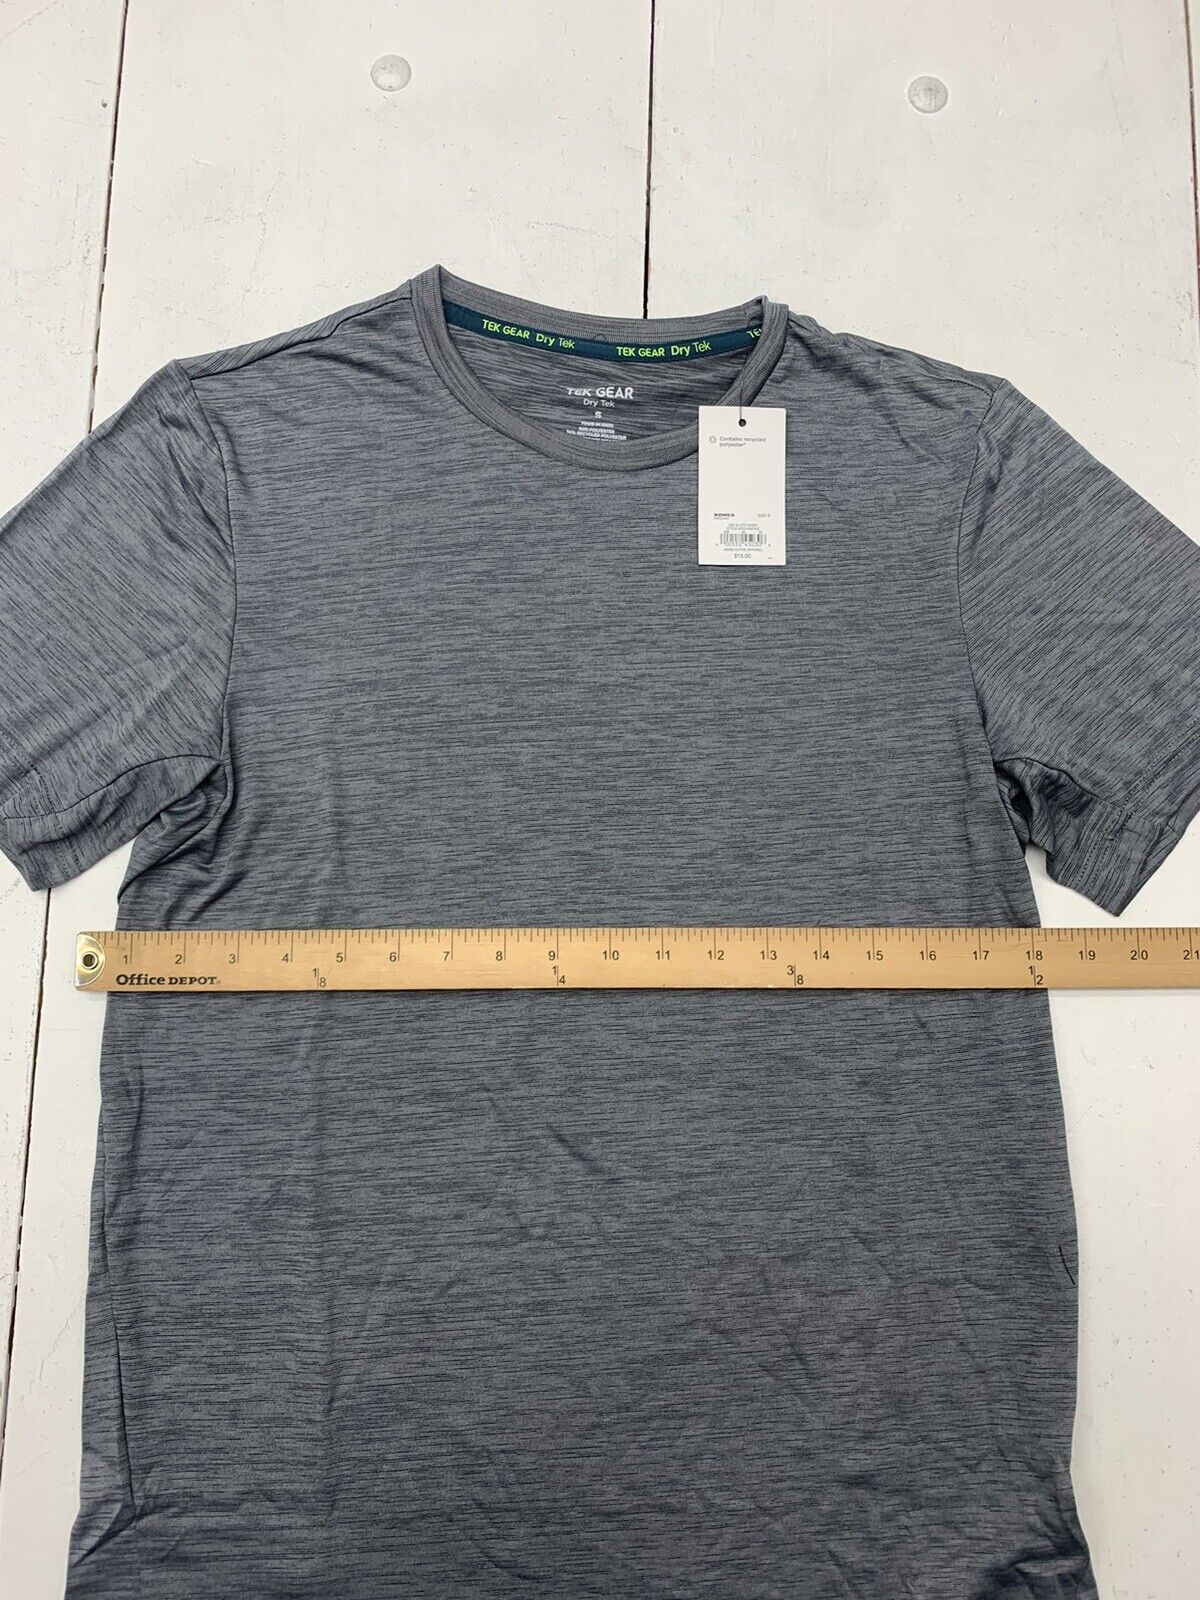 Tek Gear Boys Athletic DryTek Short Sleeve T-Shirt NWOT Size XL 18